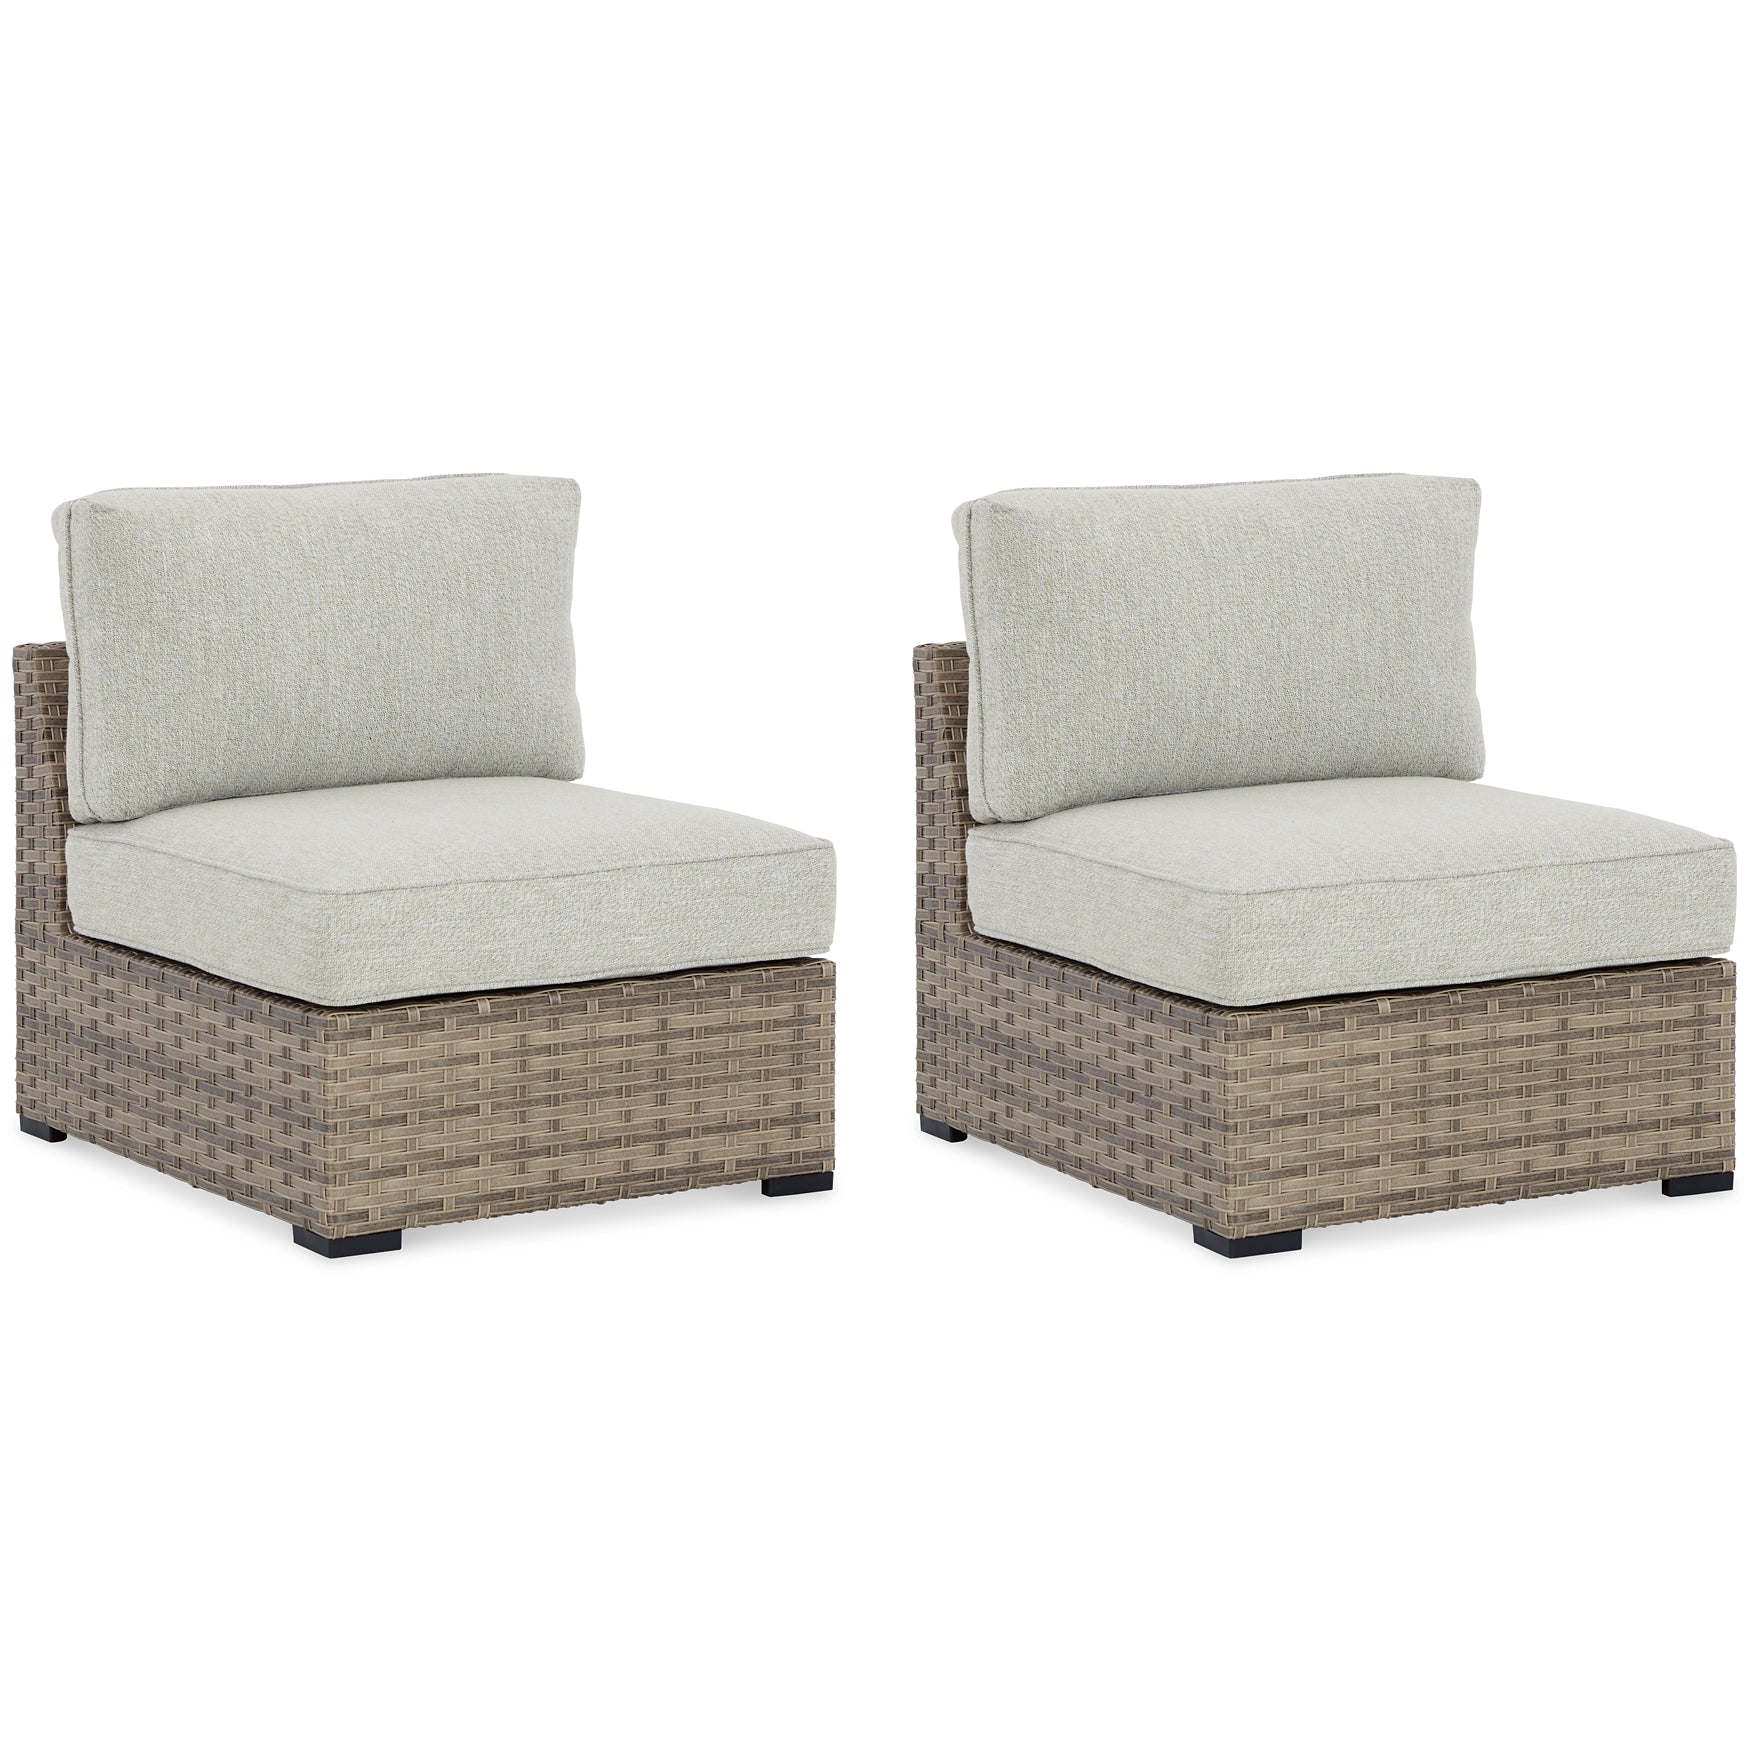 Calworth Armless Chair w/Cushion (2/CN) JB's Furniture  Home Furniture, Home Decor, Furniture Store